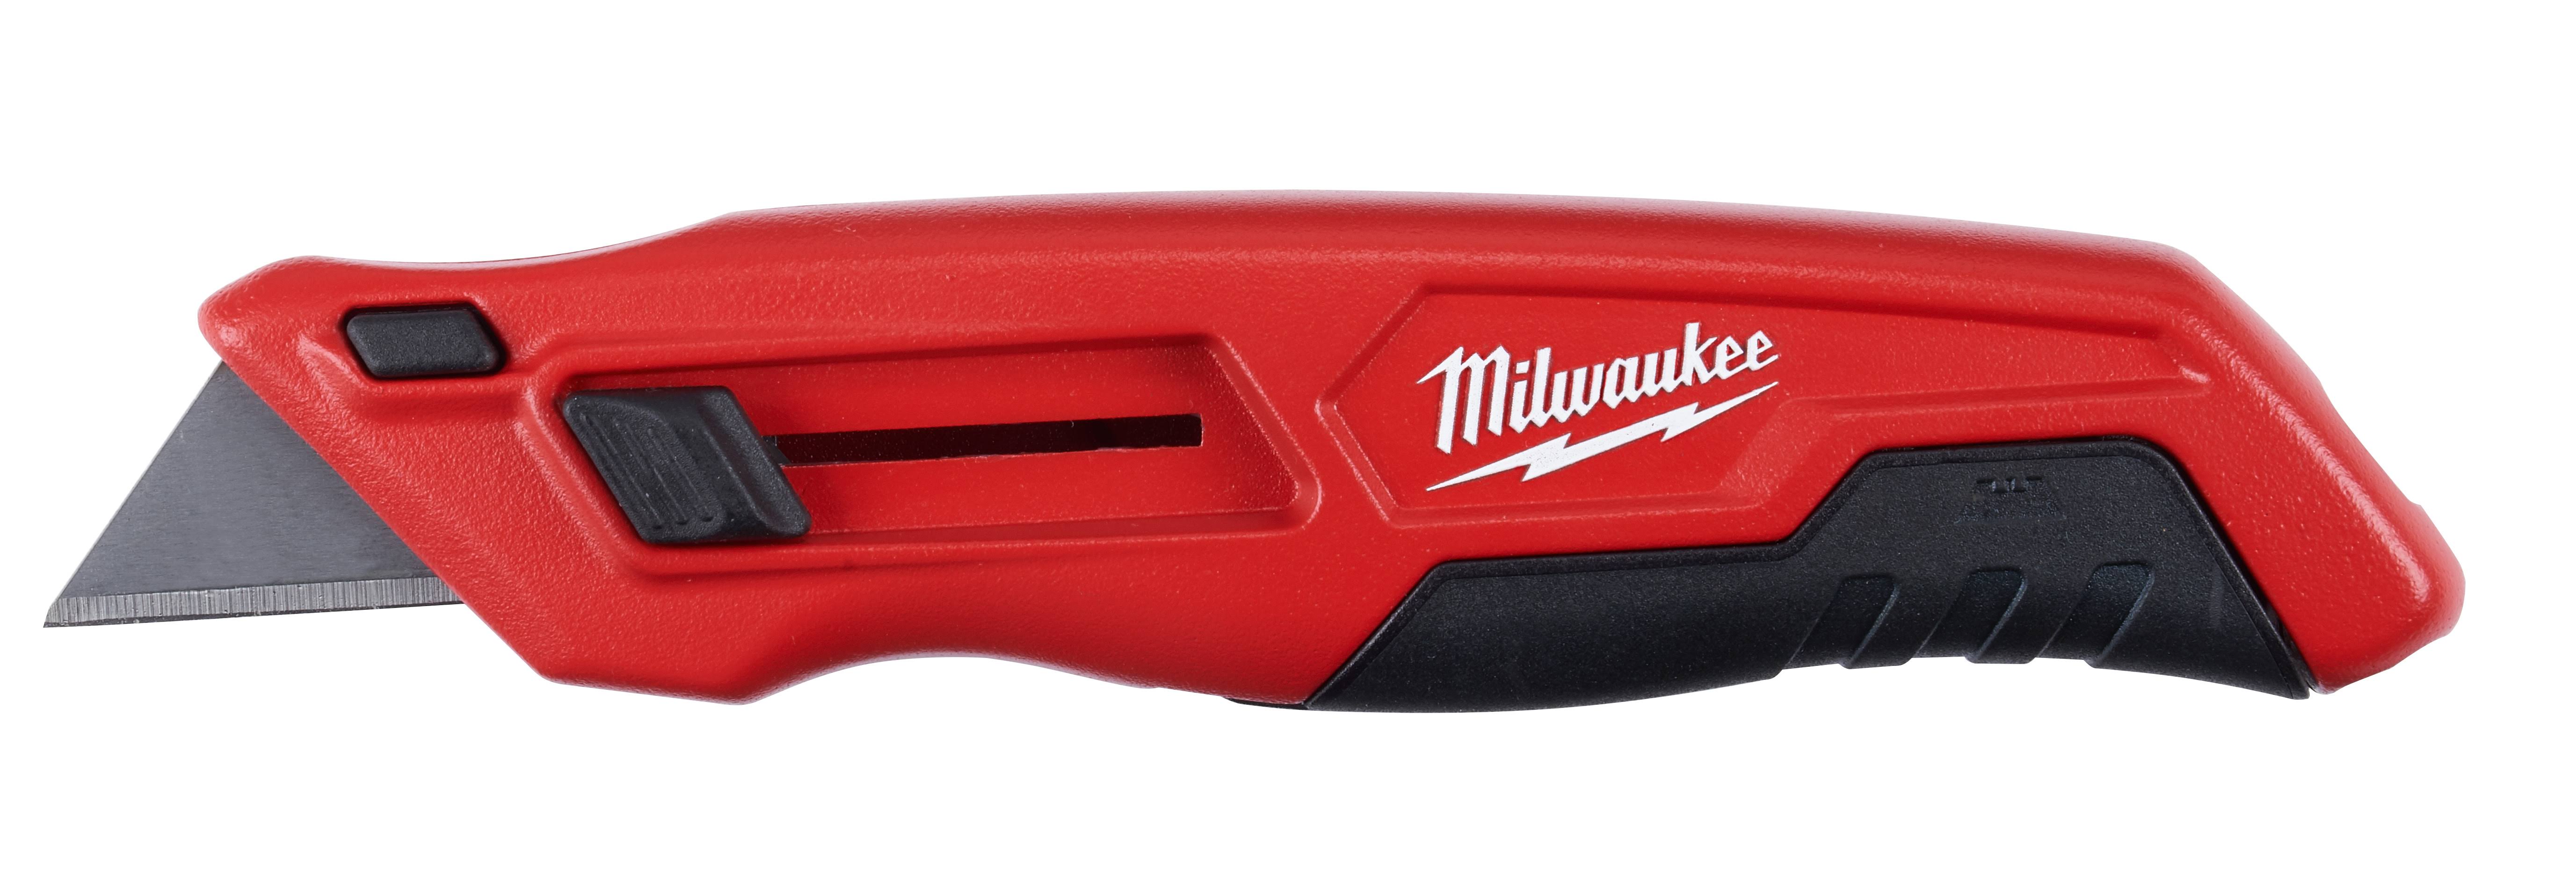 Milwaukee Side Slide Out Utility Knife